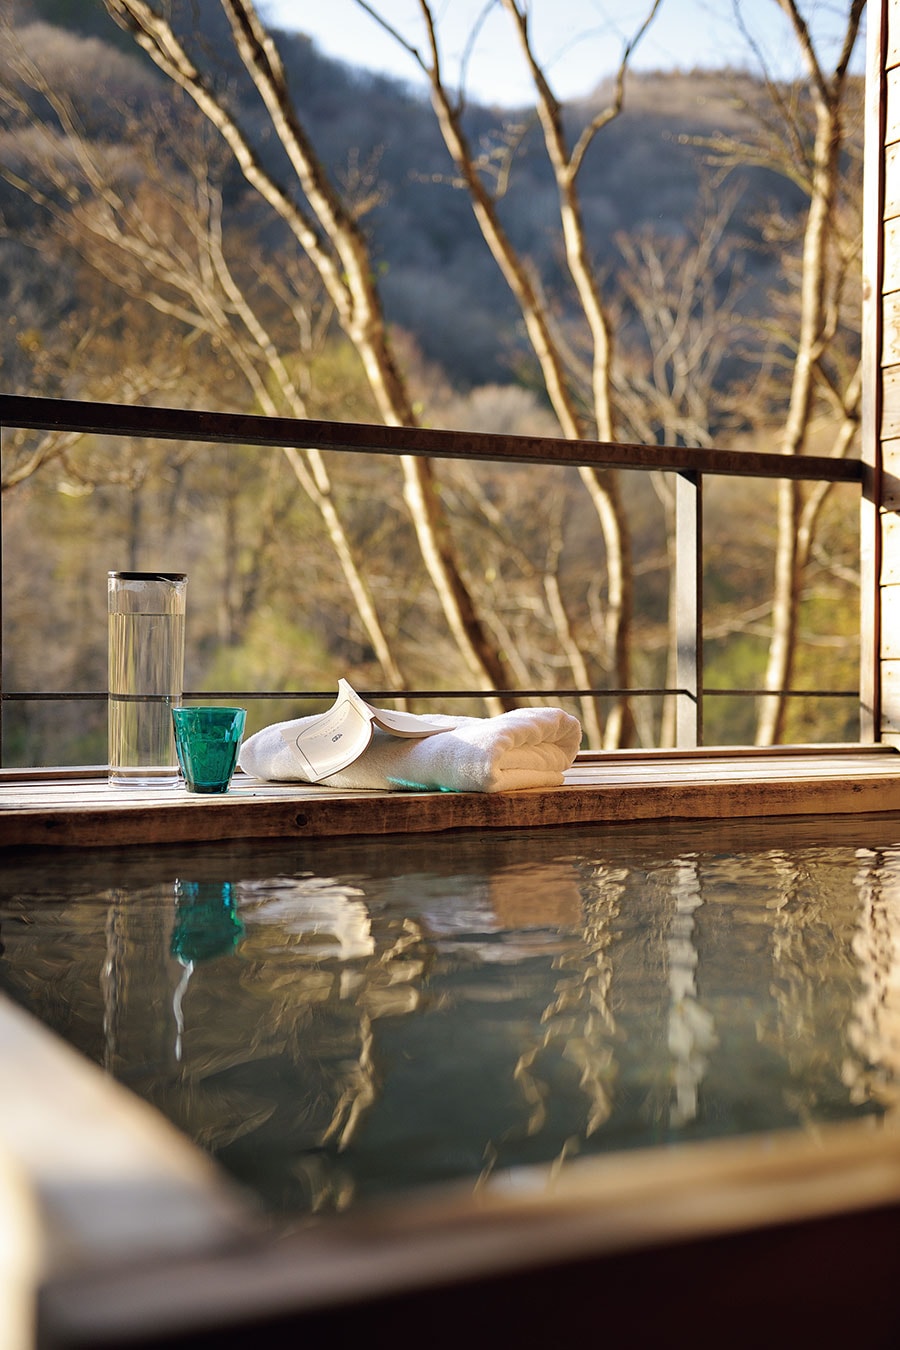 「星野リゾート 奥入瀬渓流ホテル」の露天風呂テラス付客室。時間の移ろいを堪能できるのも連泊の醍醐味。